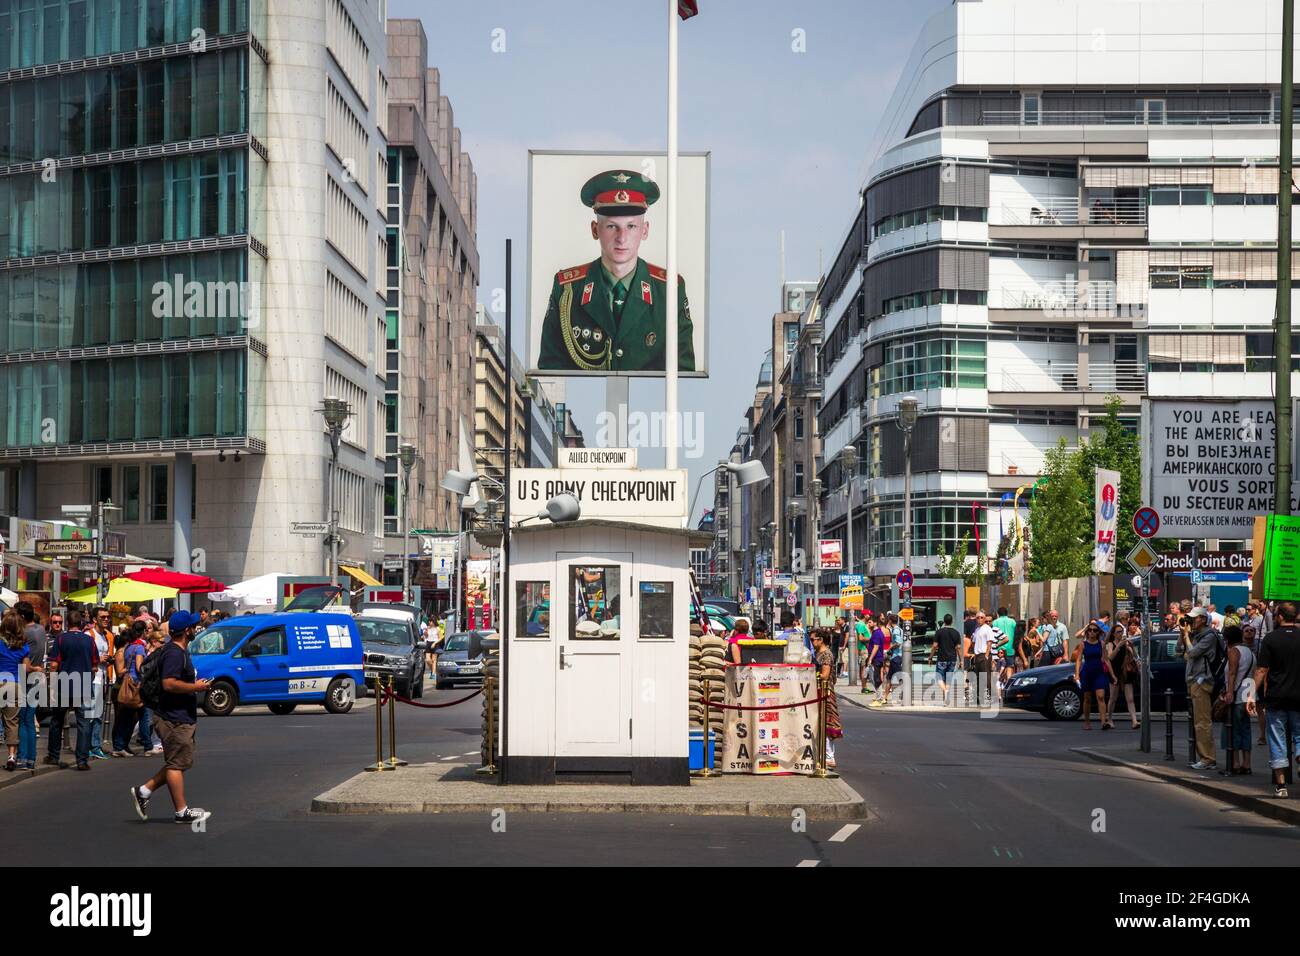 Touristen rund um den ehemaligen alliierten Checkpoint Charlie. Heutzutage ist diese Website eine Touristenattraktion. Berlin, Deutschland - 23. Mai 2014. Stockfoto